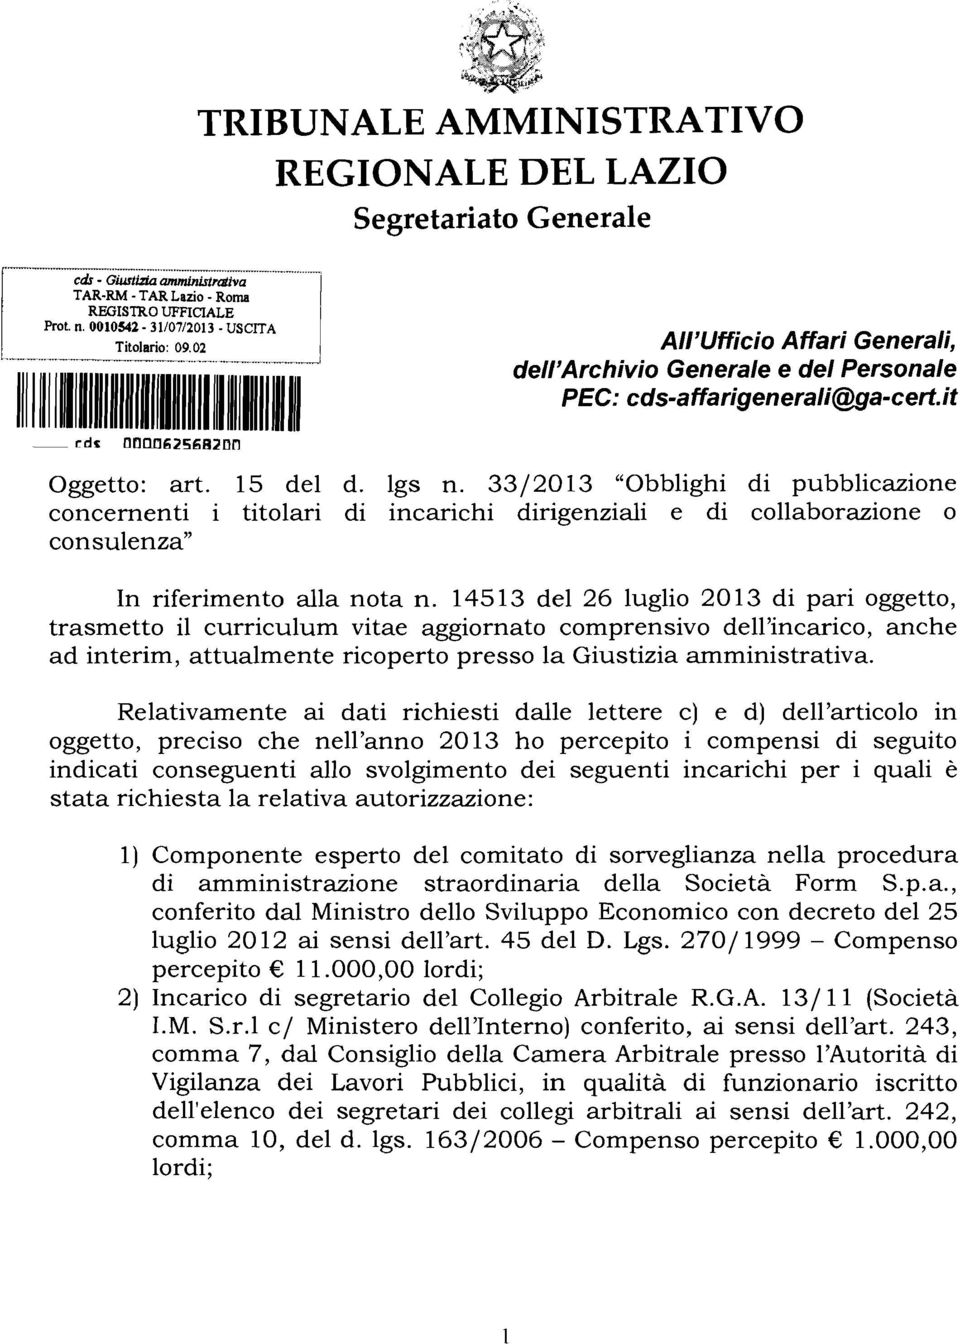 33/2013 "Obblighi di pubblicazione concernenti i titolari di incarichi dirigenziali e di collaborazione 0 consulenza" In riferimento alla nota n.